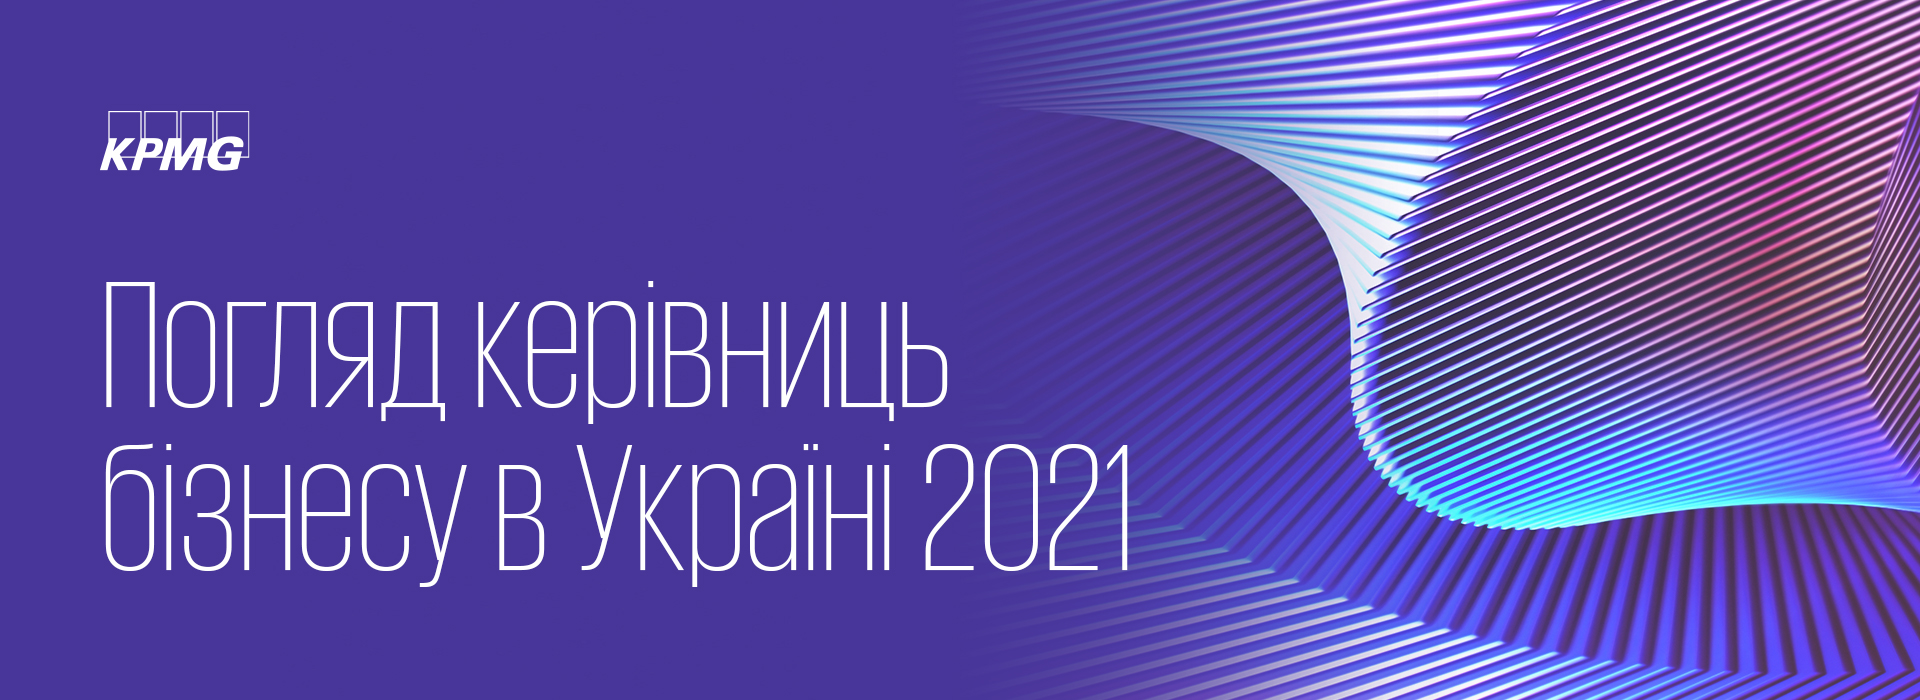 Щорічне опитування «Погляд керівниць бізнесу України 2021»